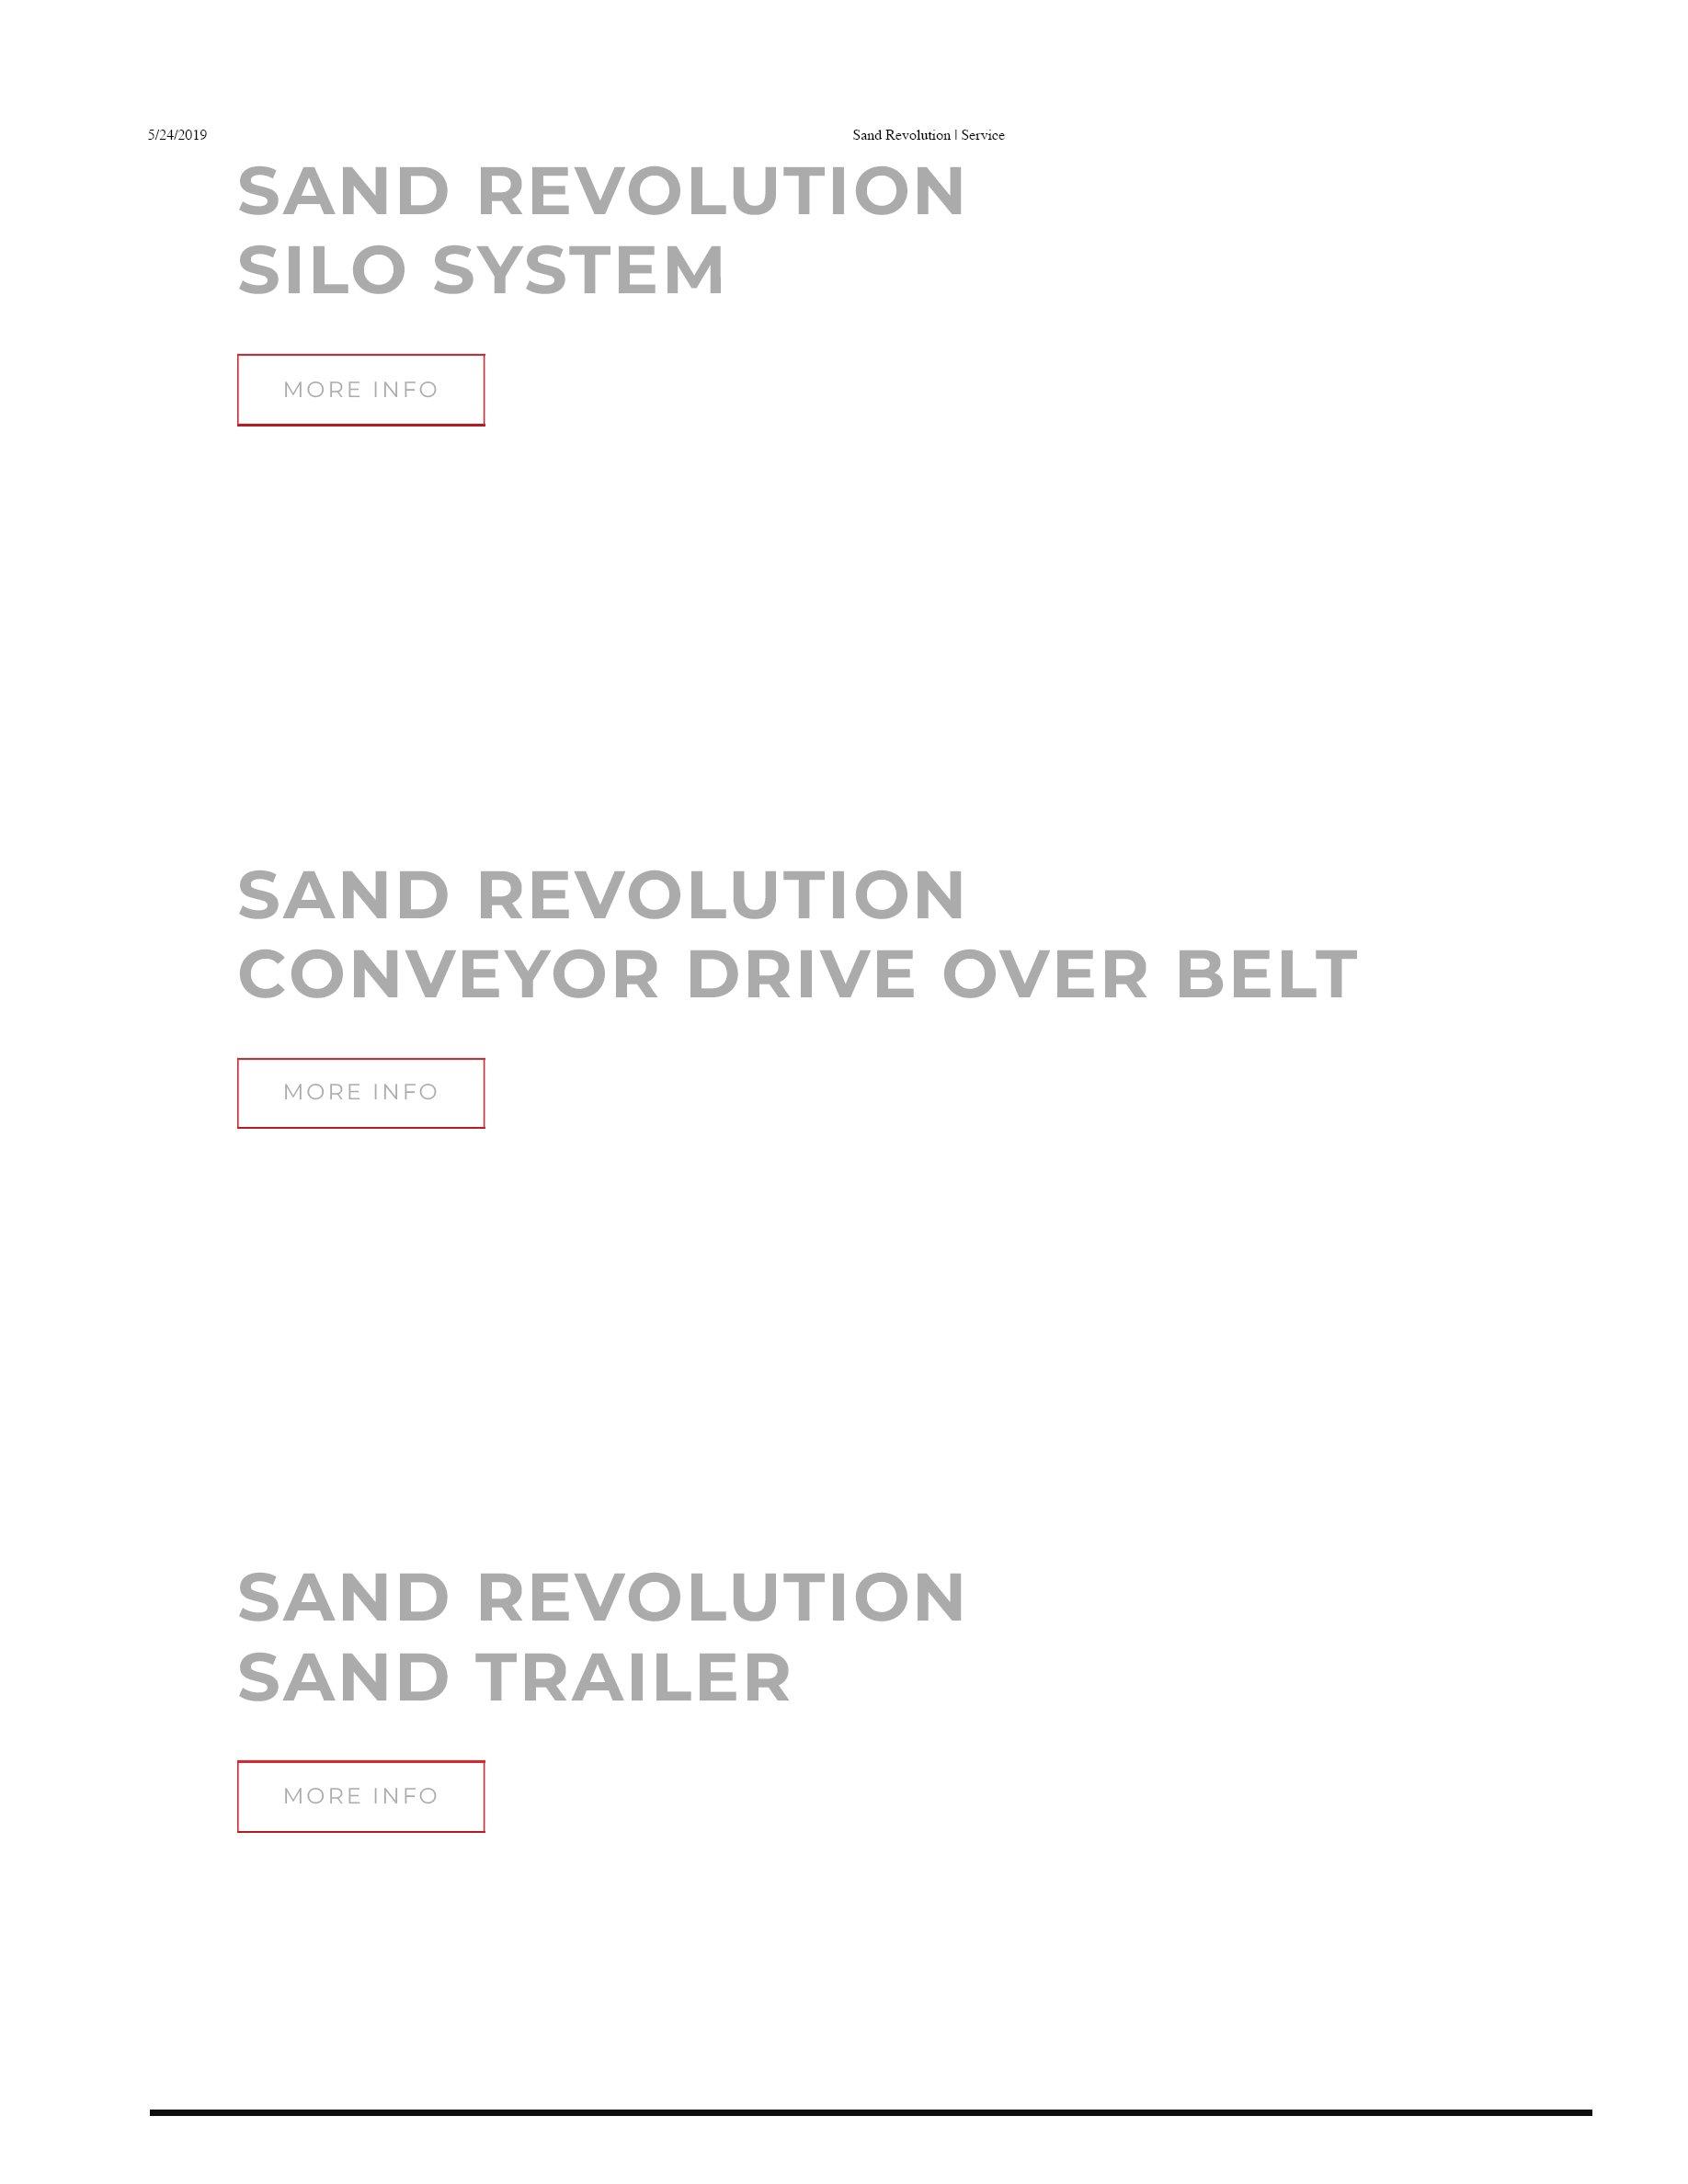 SAND REVOLUTION - Sand Revolution II, LLC Trademark Registration